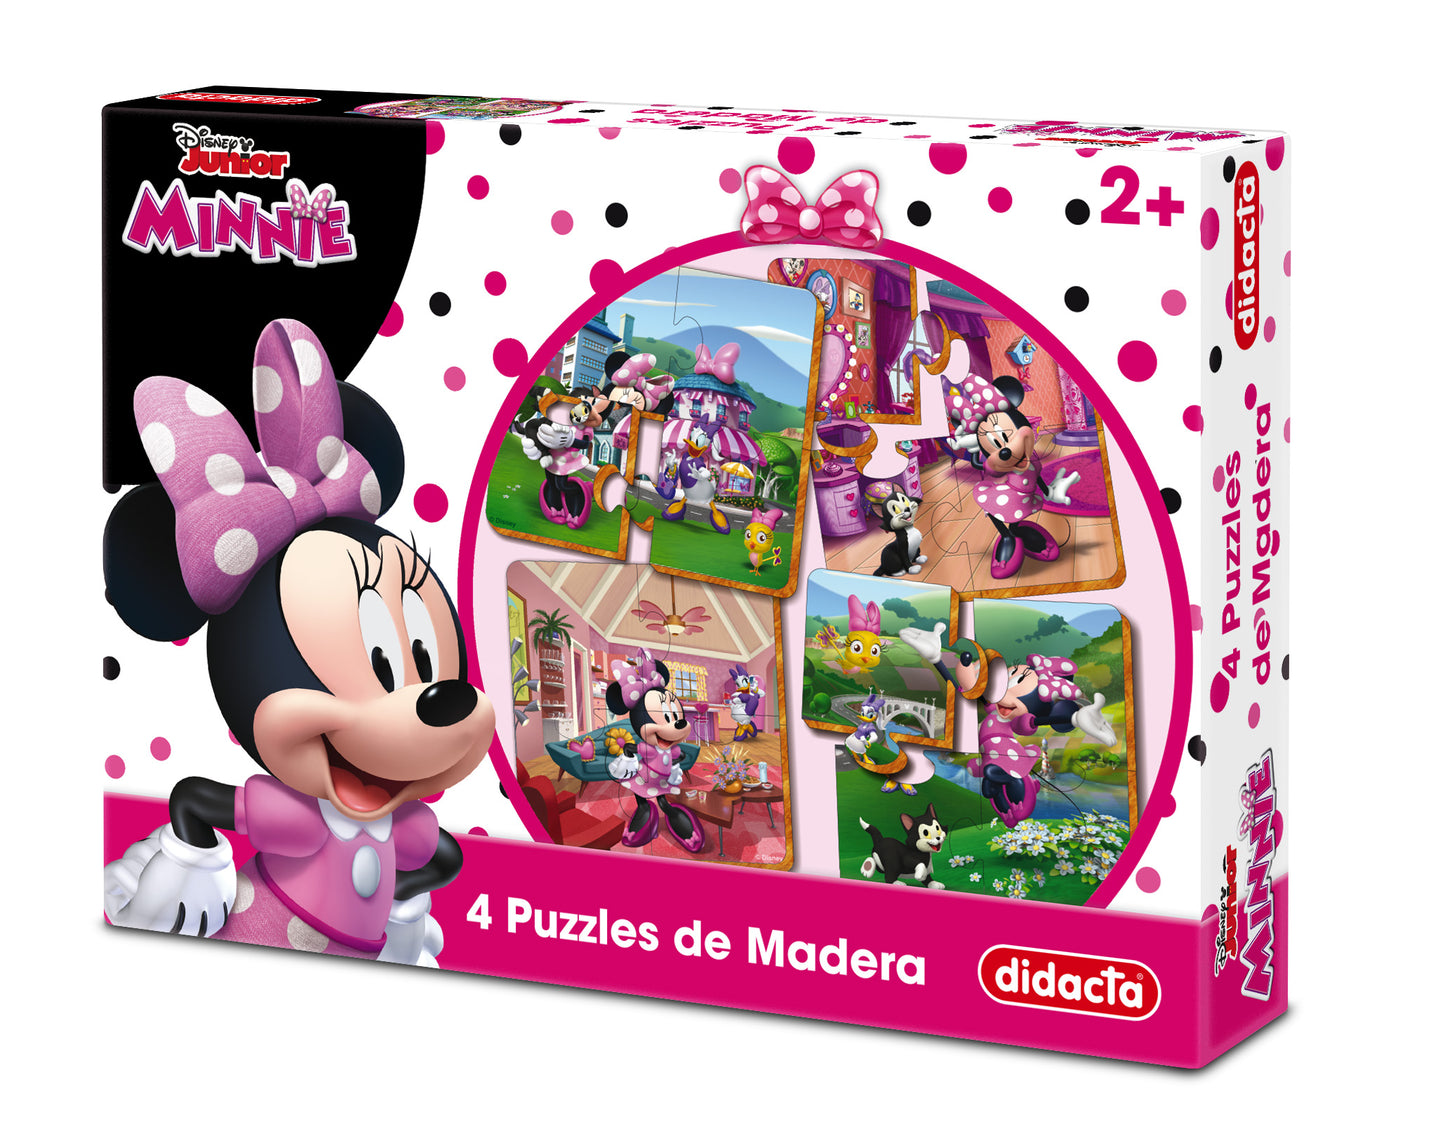 Minnie  4 puzzles de madera